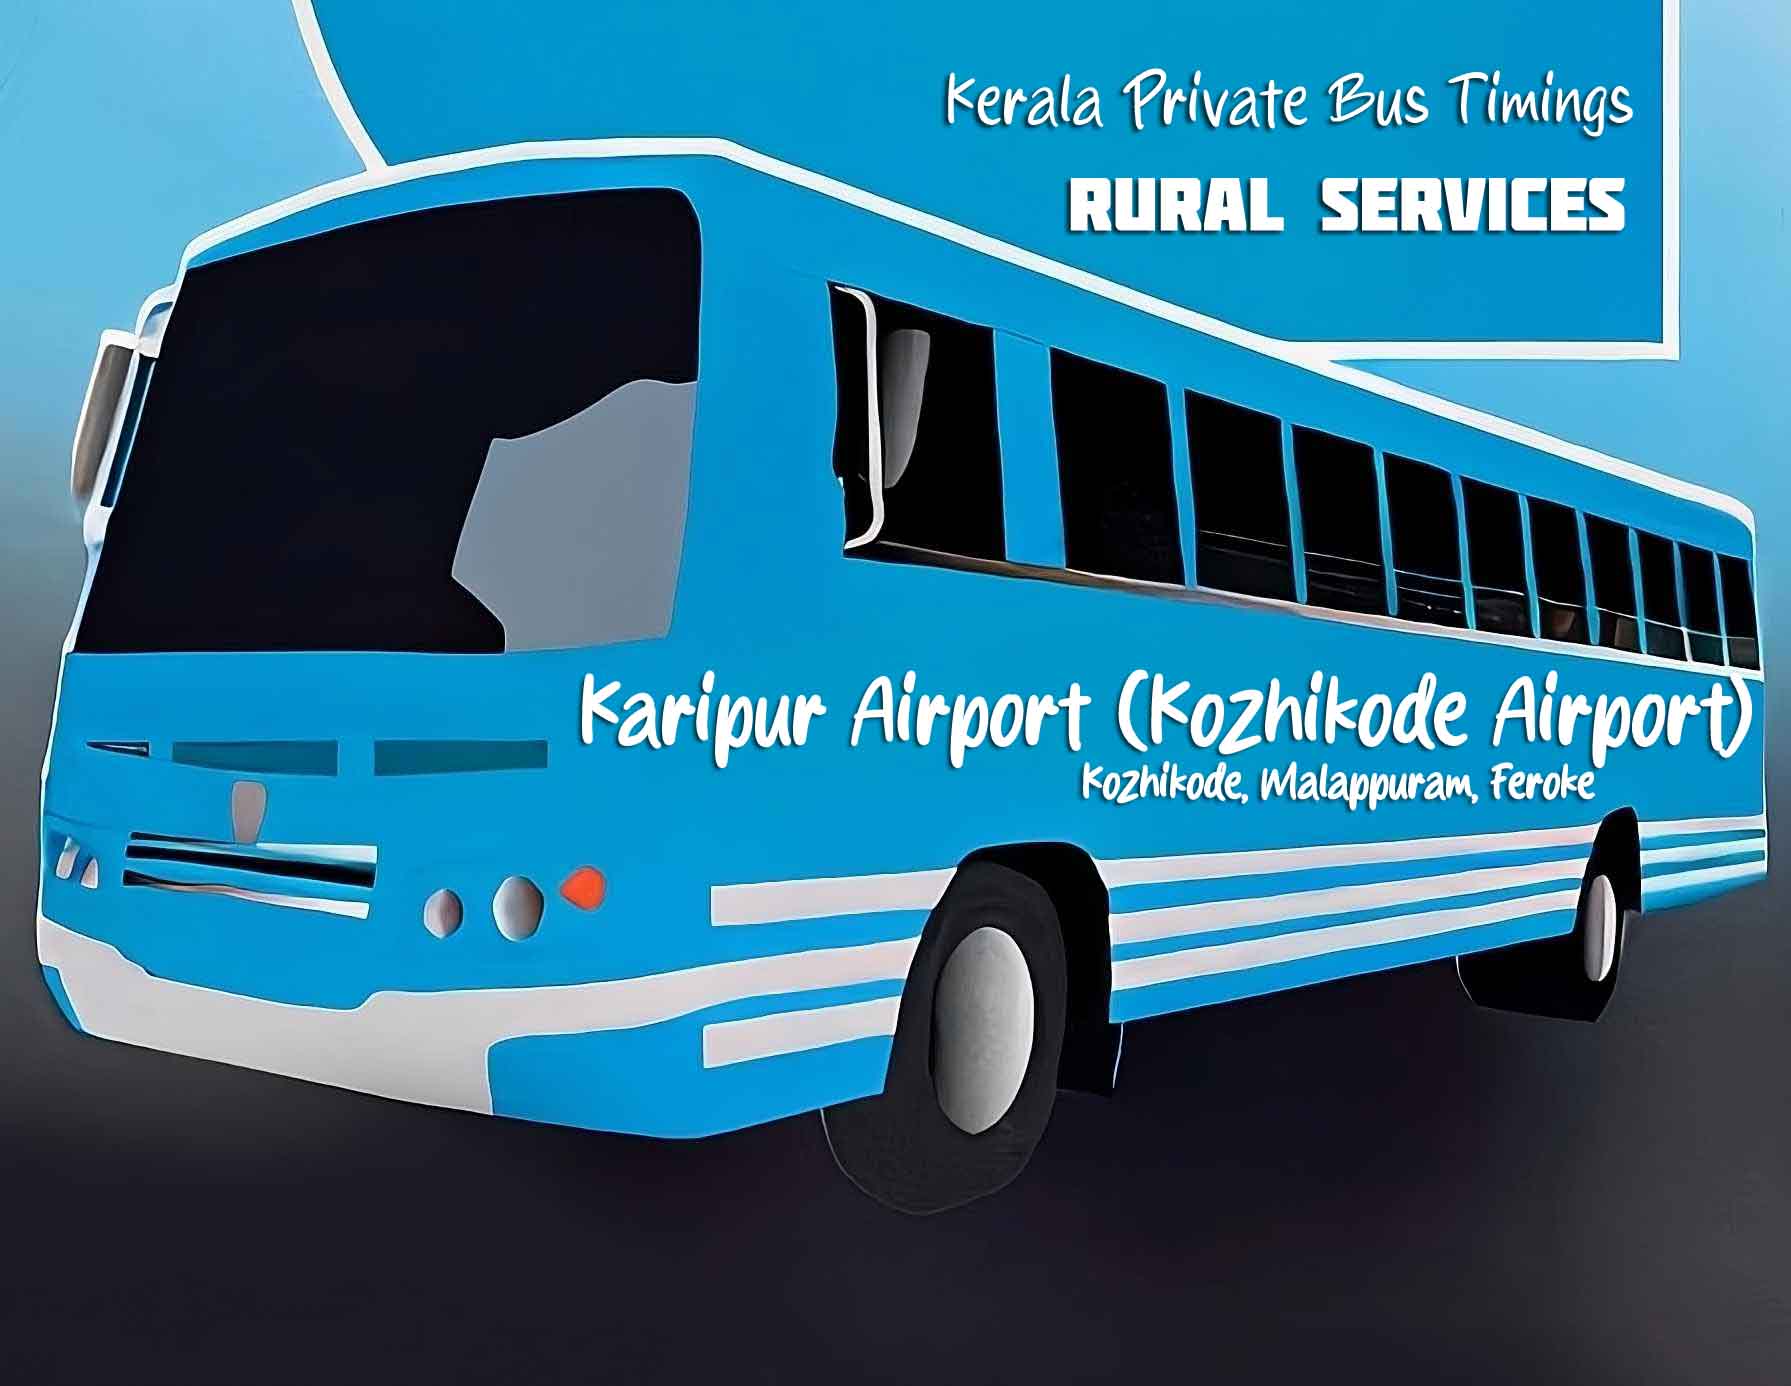 Karipur Airport (Kozhikode Airport) Bus Timings